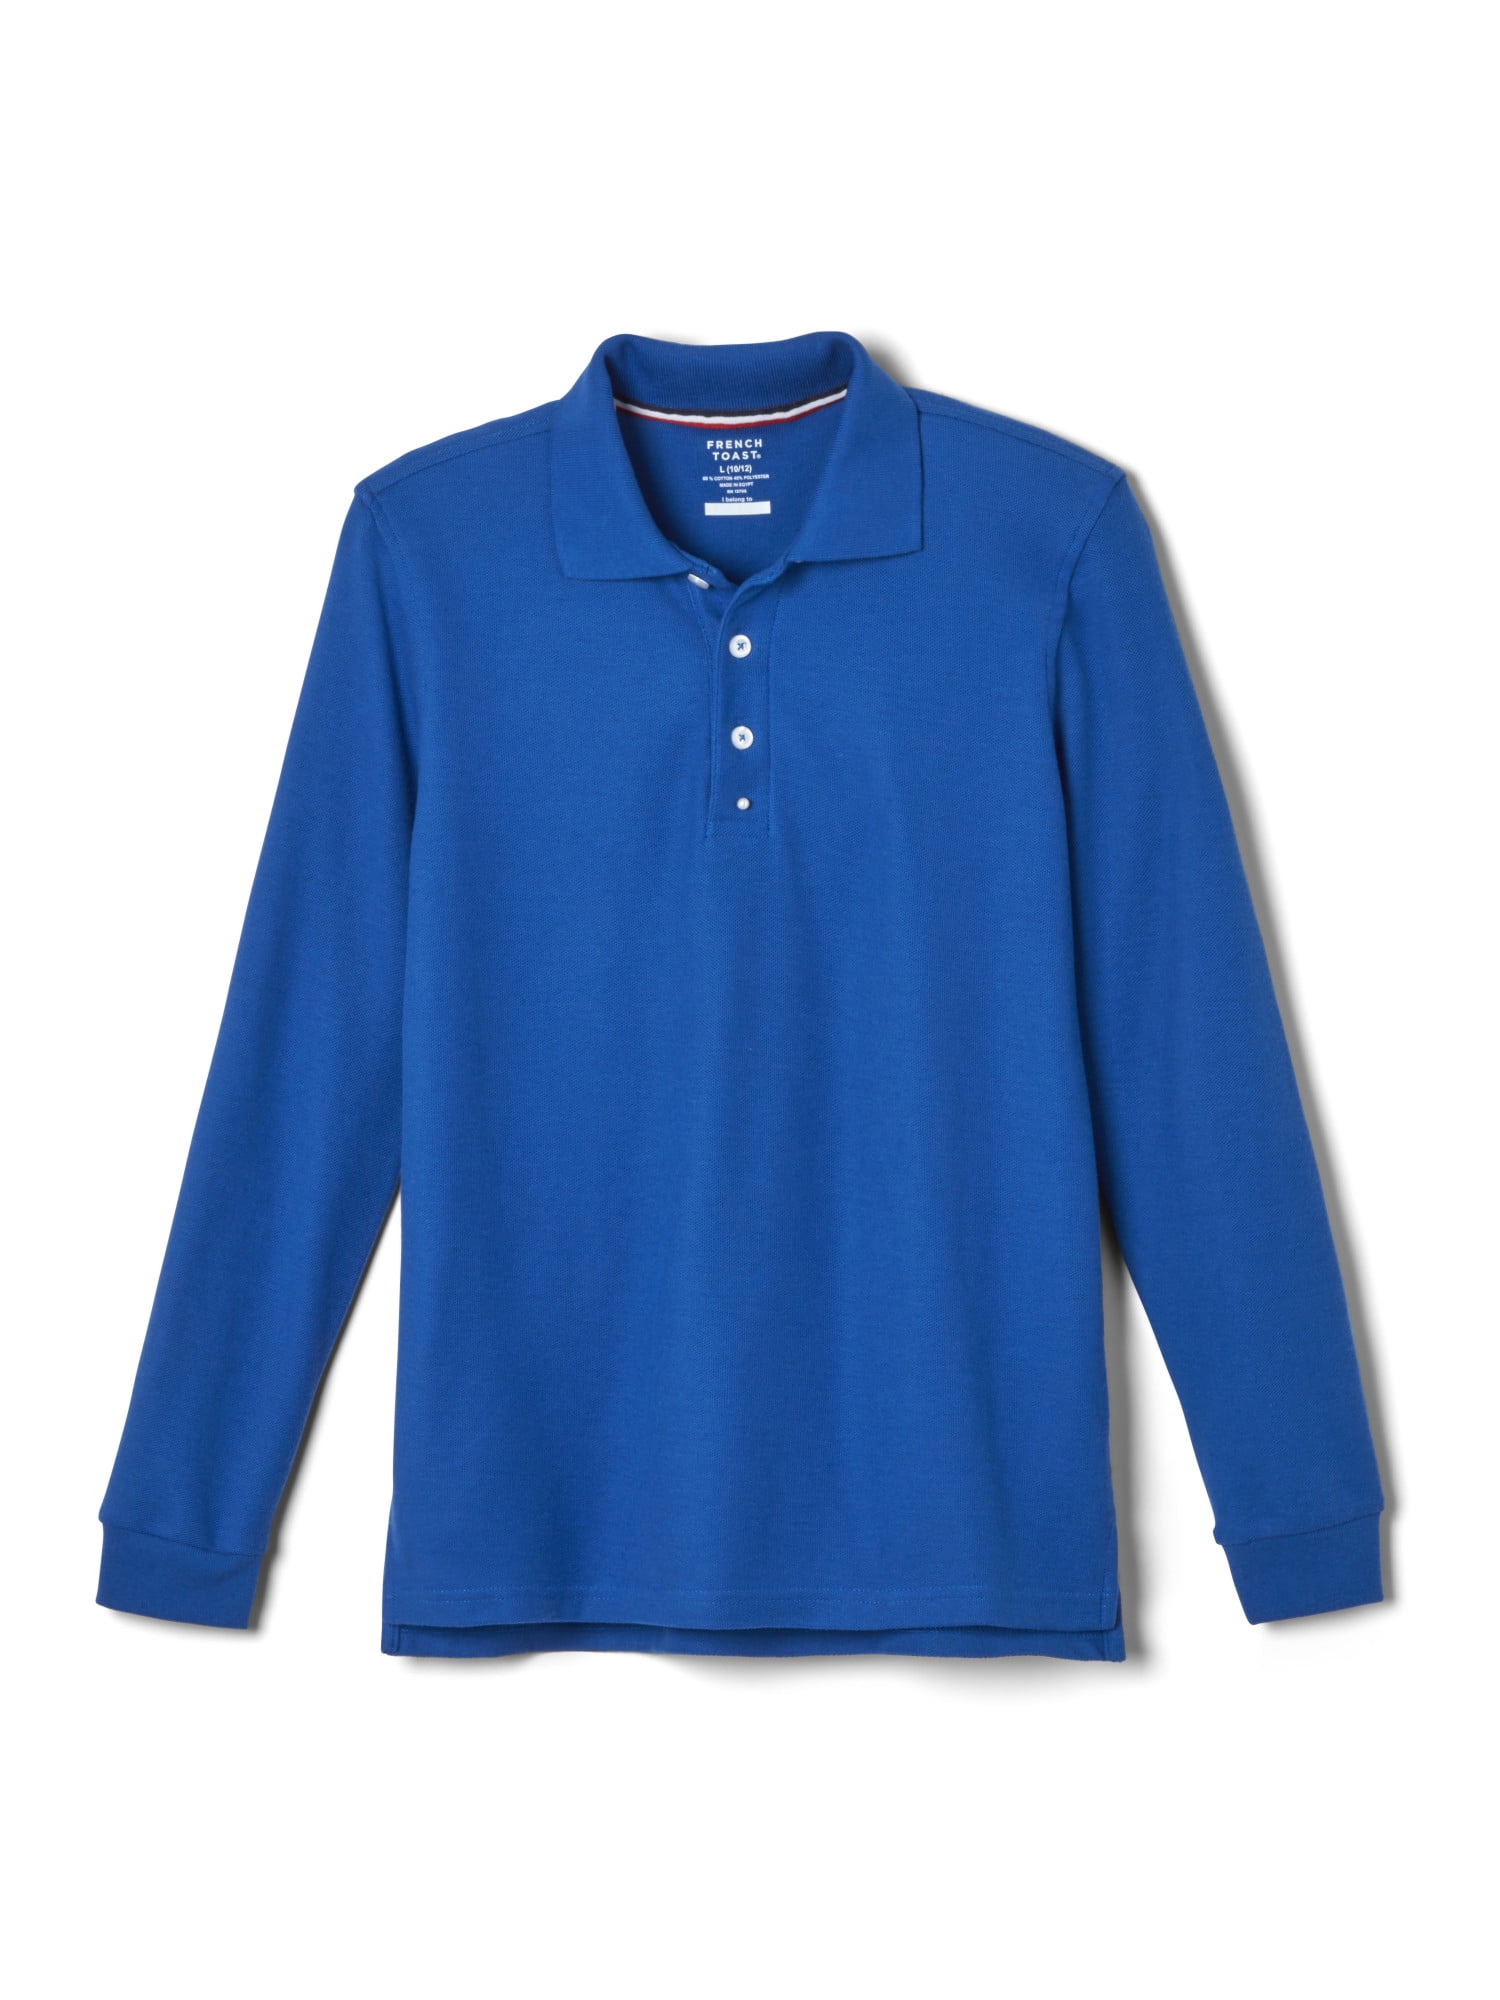 Reg & Plus Sizes French Toast School Uniform Long Sleeve Unisex Knit Shirt 